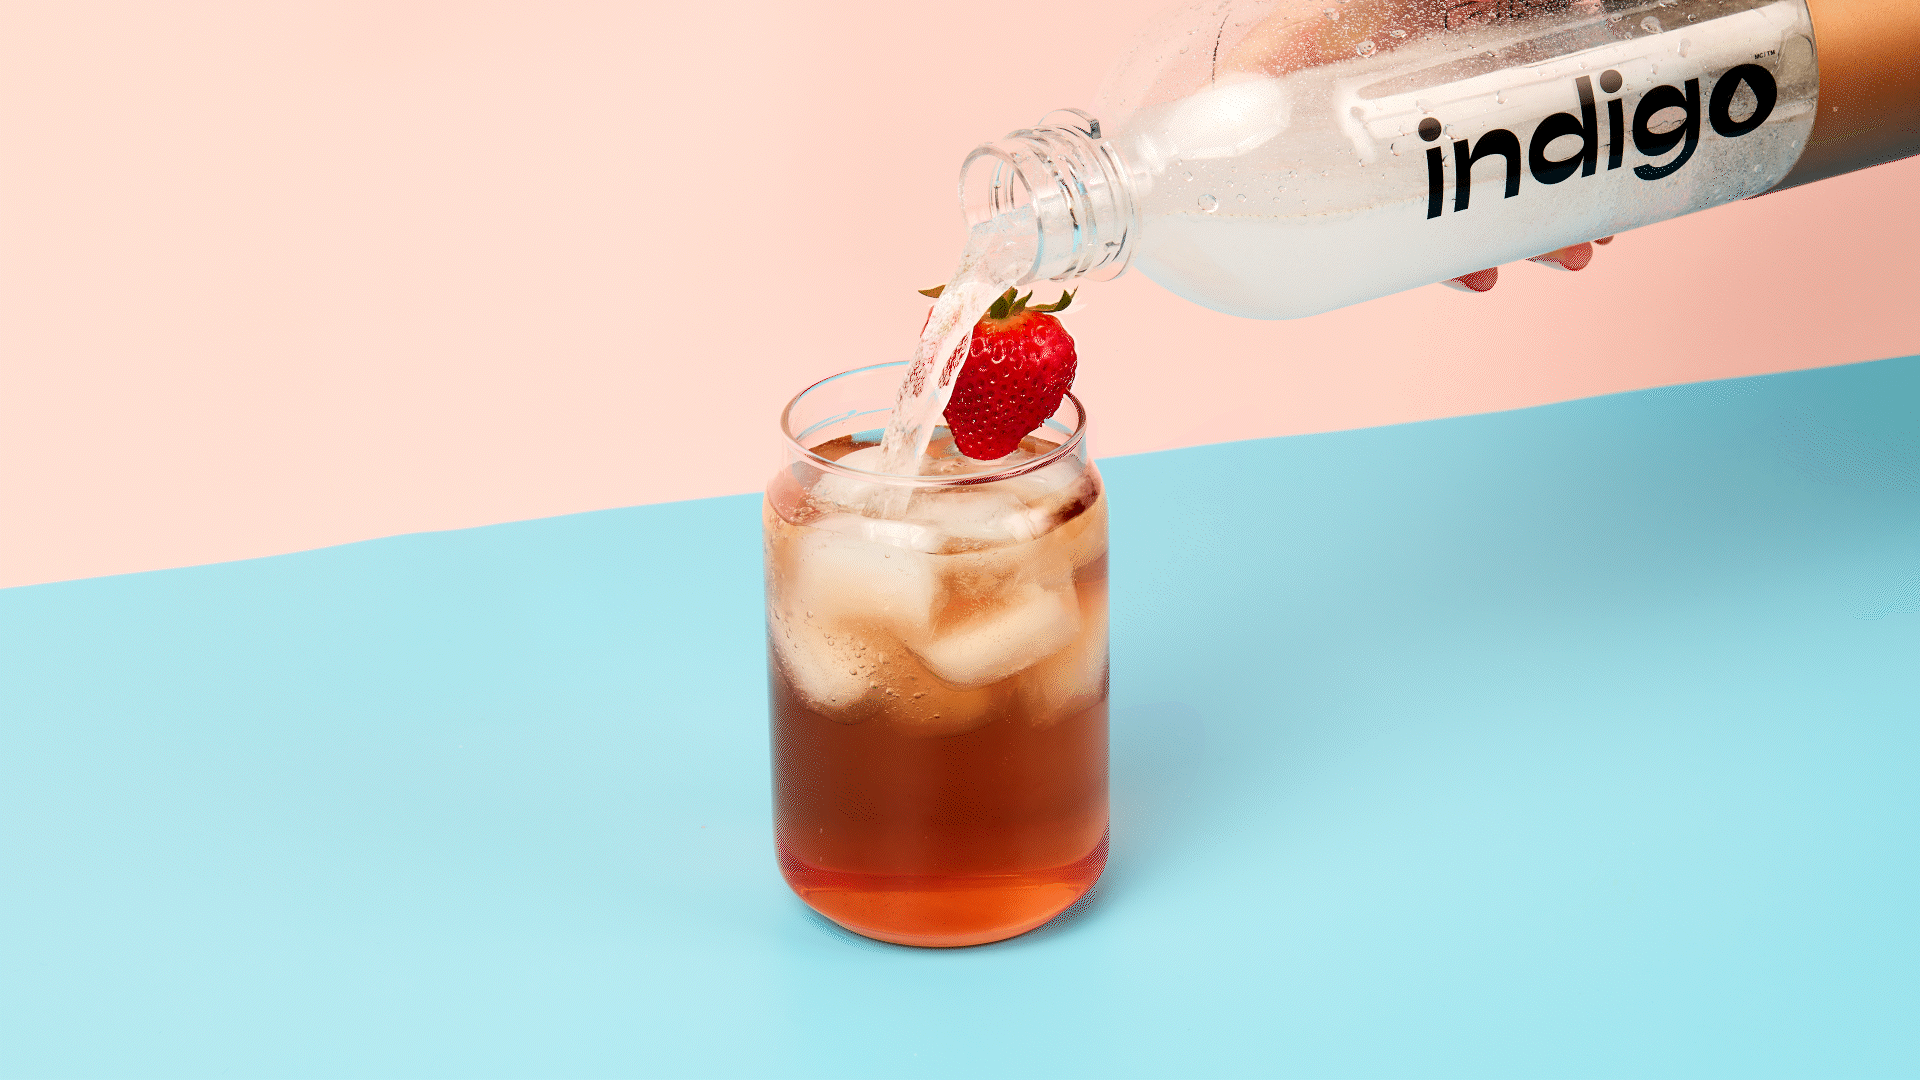 Une main verse de l'eau pétillante d'une bouteille en plastique transparente dans un verre rempli de glaçons et de thé glacé d'une teinte rosé. Une fraise est posée sur le bord du verre. Le fond est divisé en deux couleurs, rose et bleu.